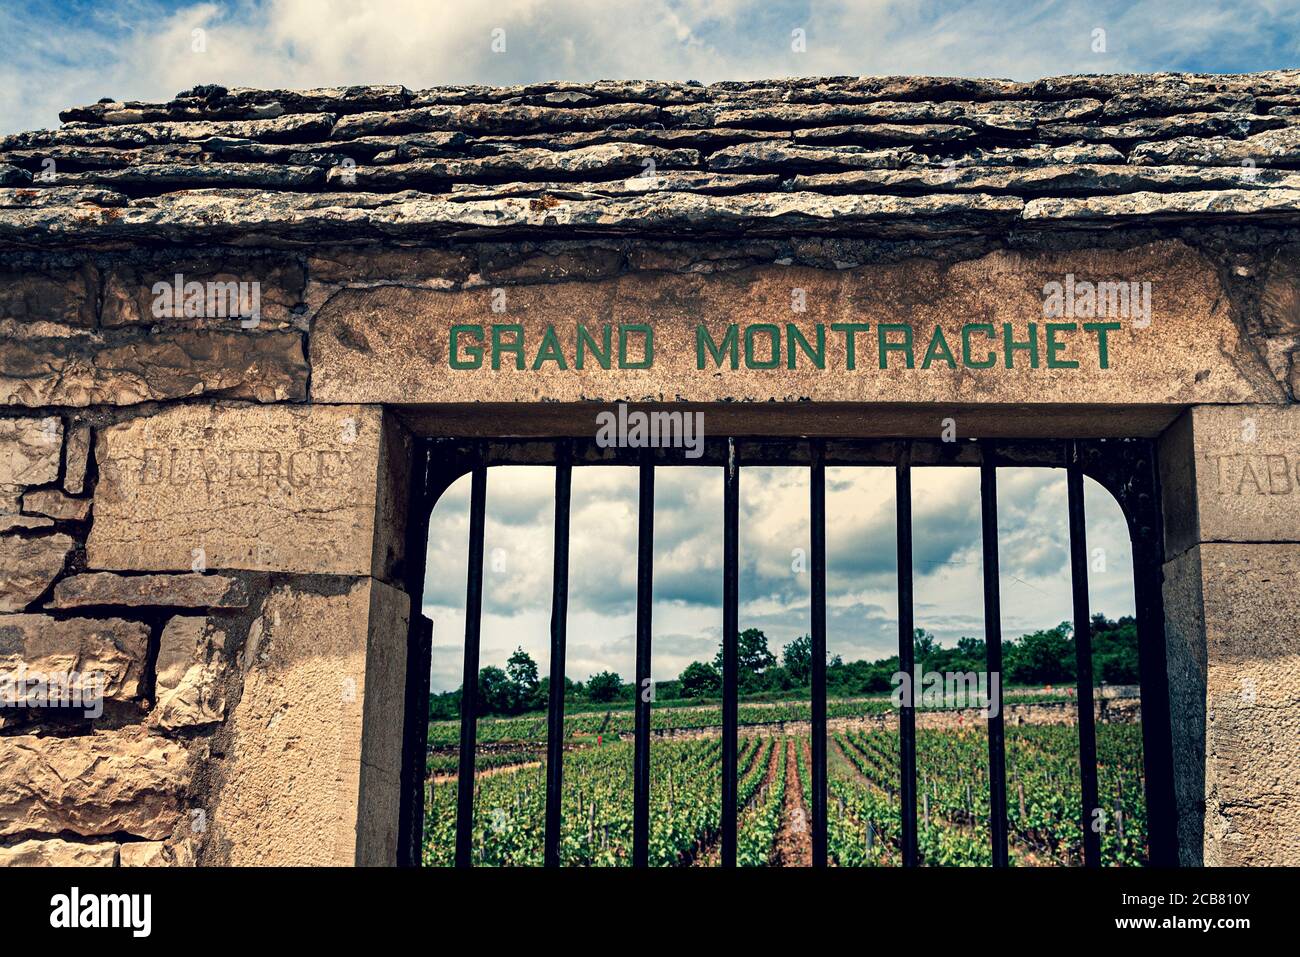 LE MONTRACHET retro stile vintage cancello d'ingresso in pietra per il miglior vino bianco Chardonnay nel mondo il vigneto Grand Montrachet Grand Cru, Puligny-Montrachet, Côte d'Or, Francia. [Côte de Beaune Grand Cru] Foto Stock